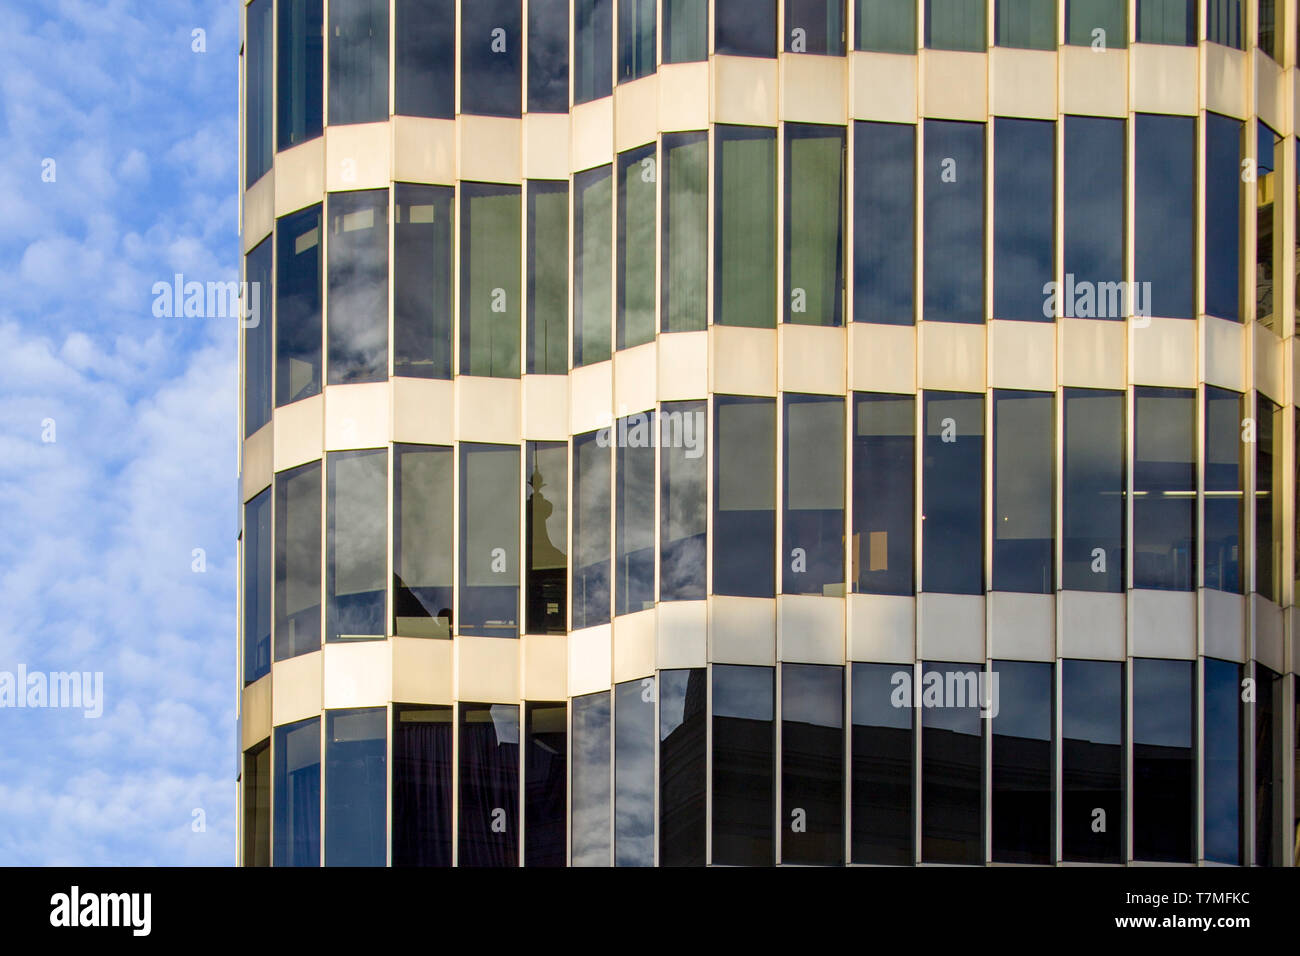 Un moderno edificio de vidrio y metal de diseño inusual, con una fachada curva. Foto de stock